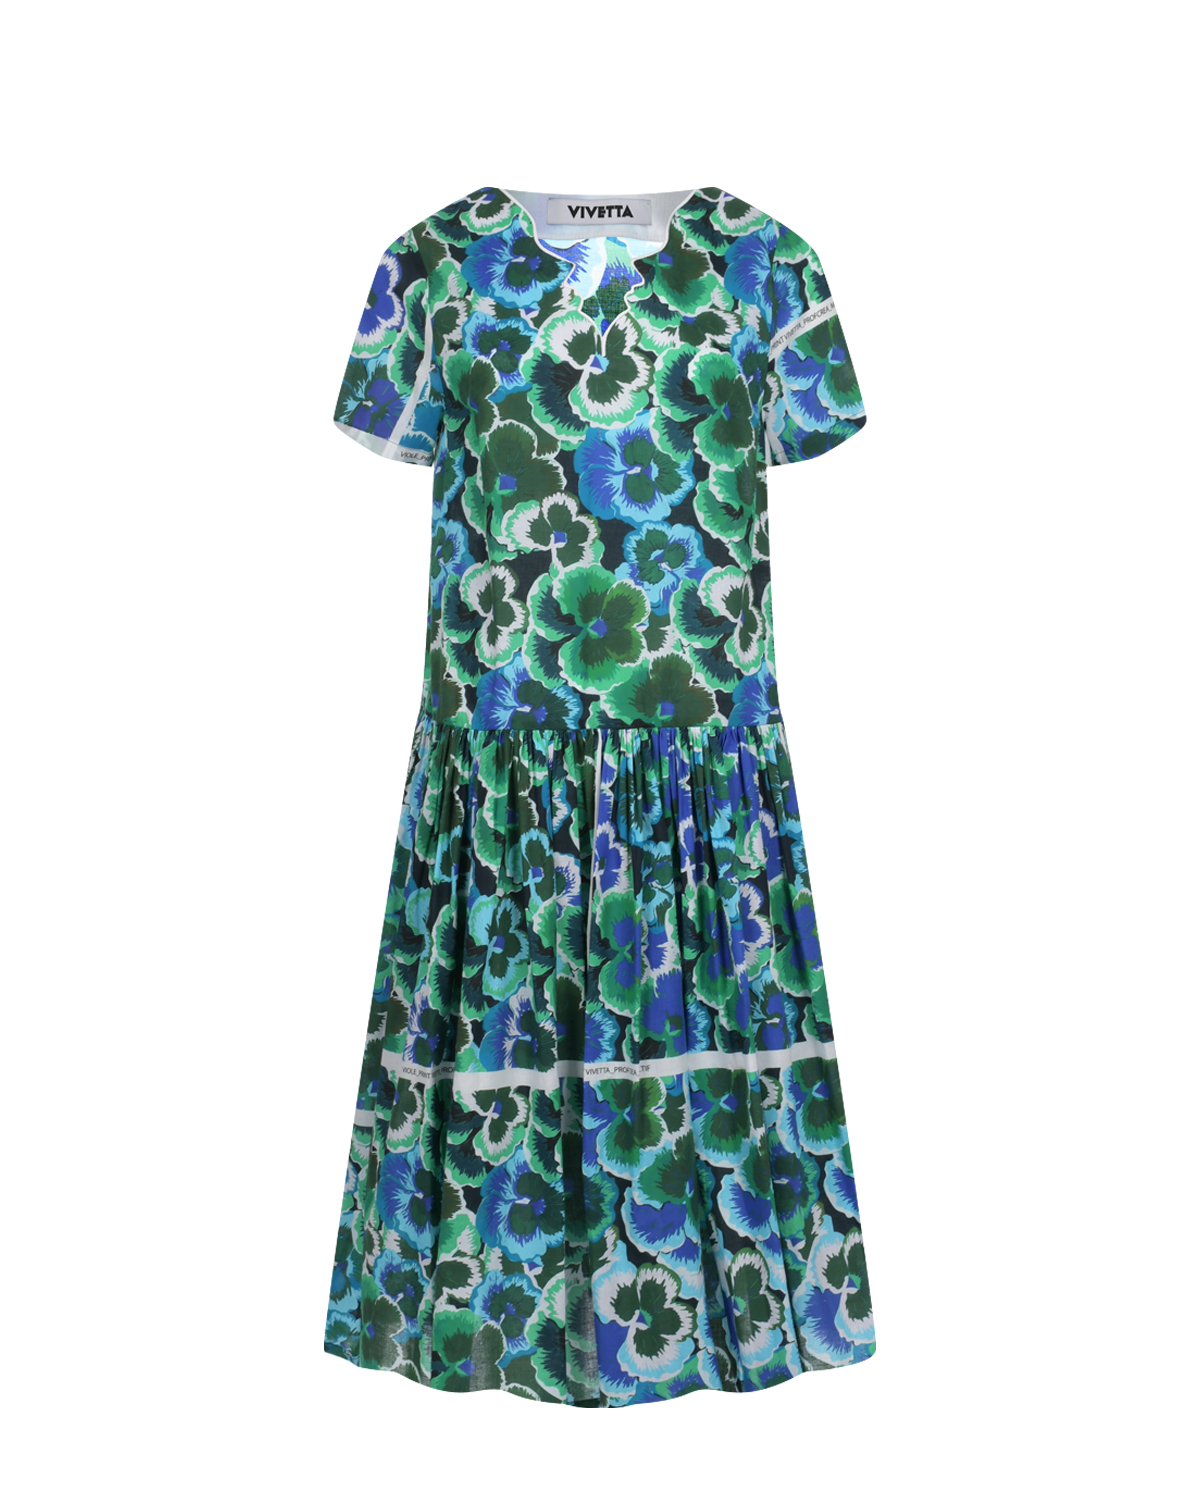 Сине-зеленое платье с цветочным принтом Vivetta, размер 40 - фото 1